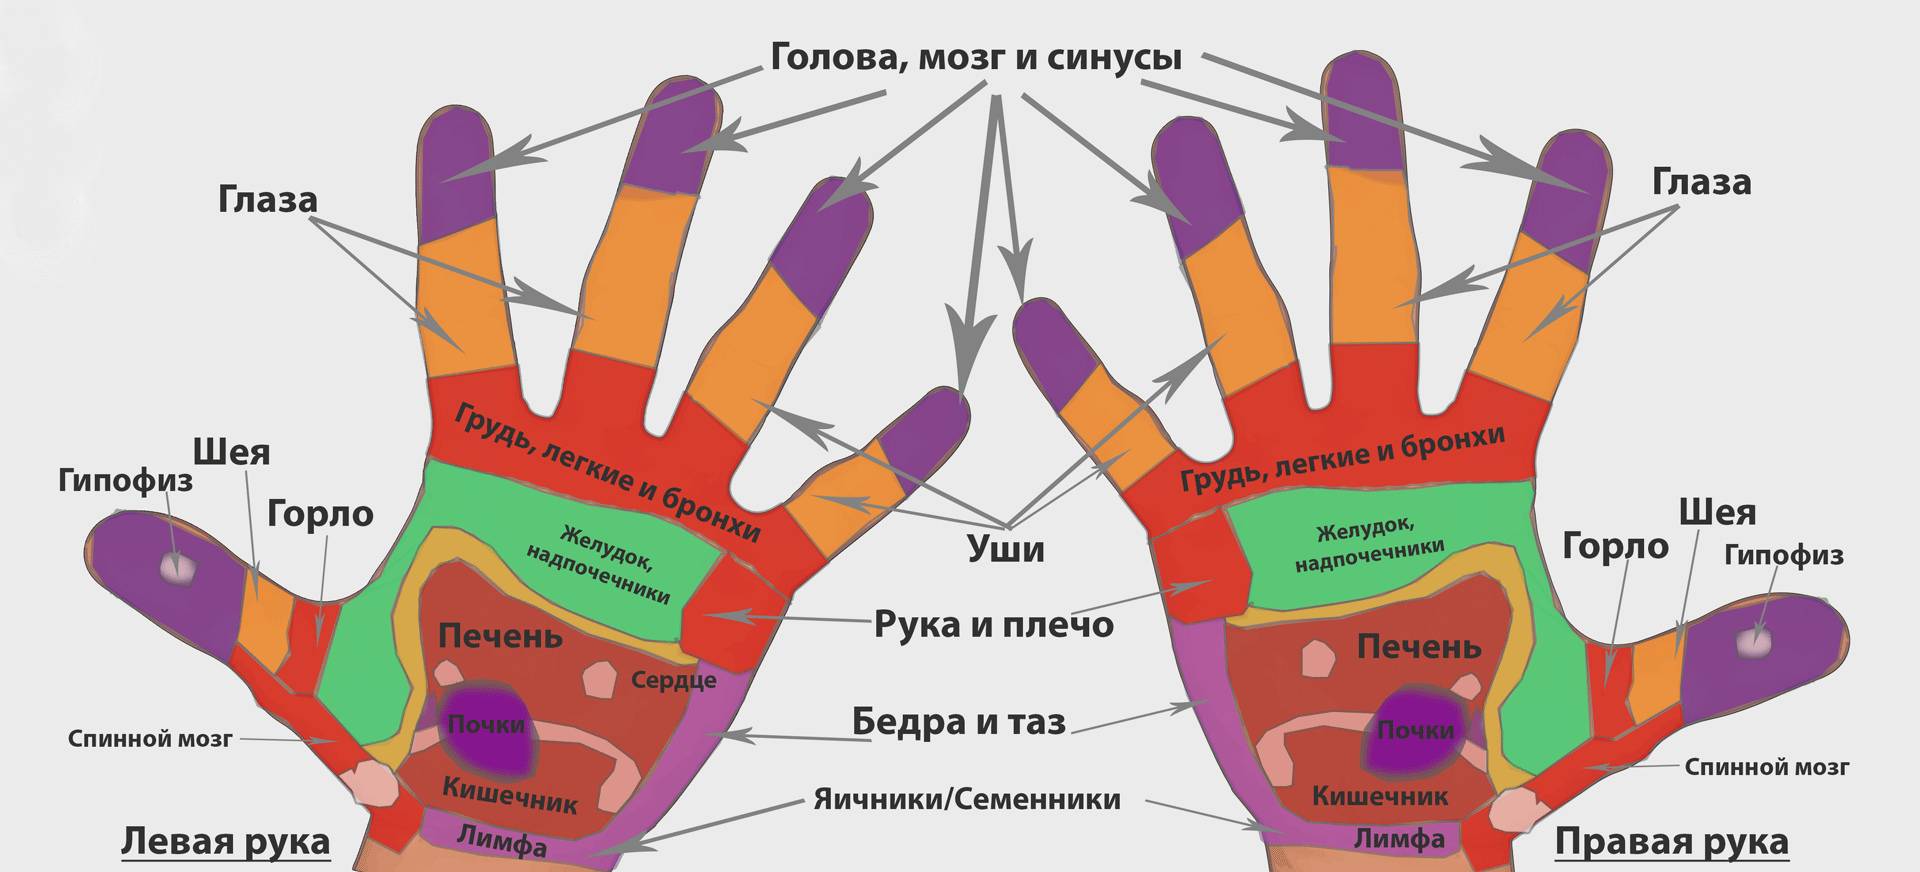 Точки на руках отвечающие за органы тела, пищеварения, слуха человека. фото с надписями правой, левой руки